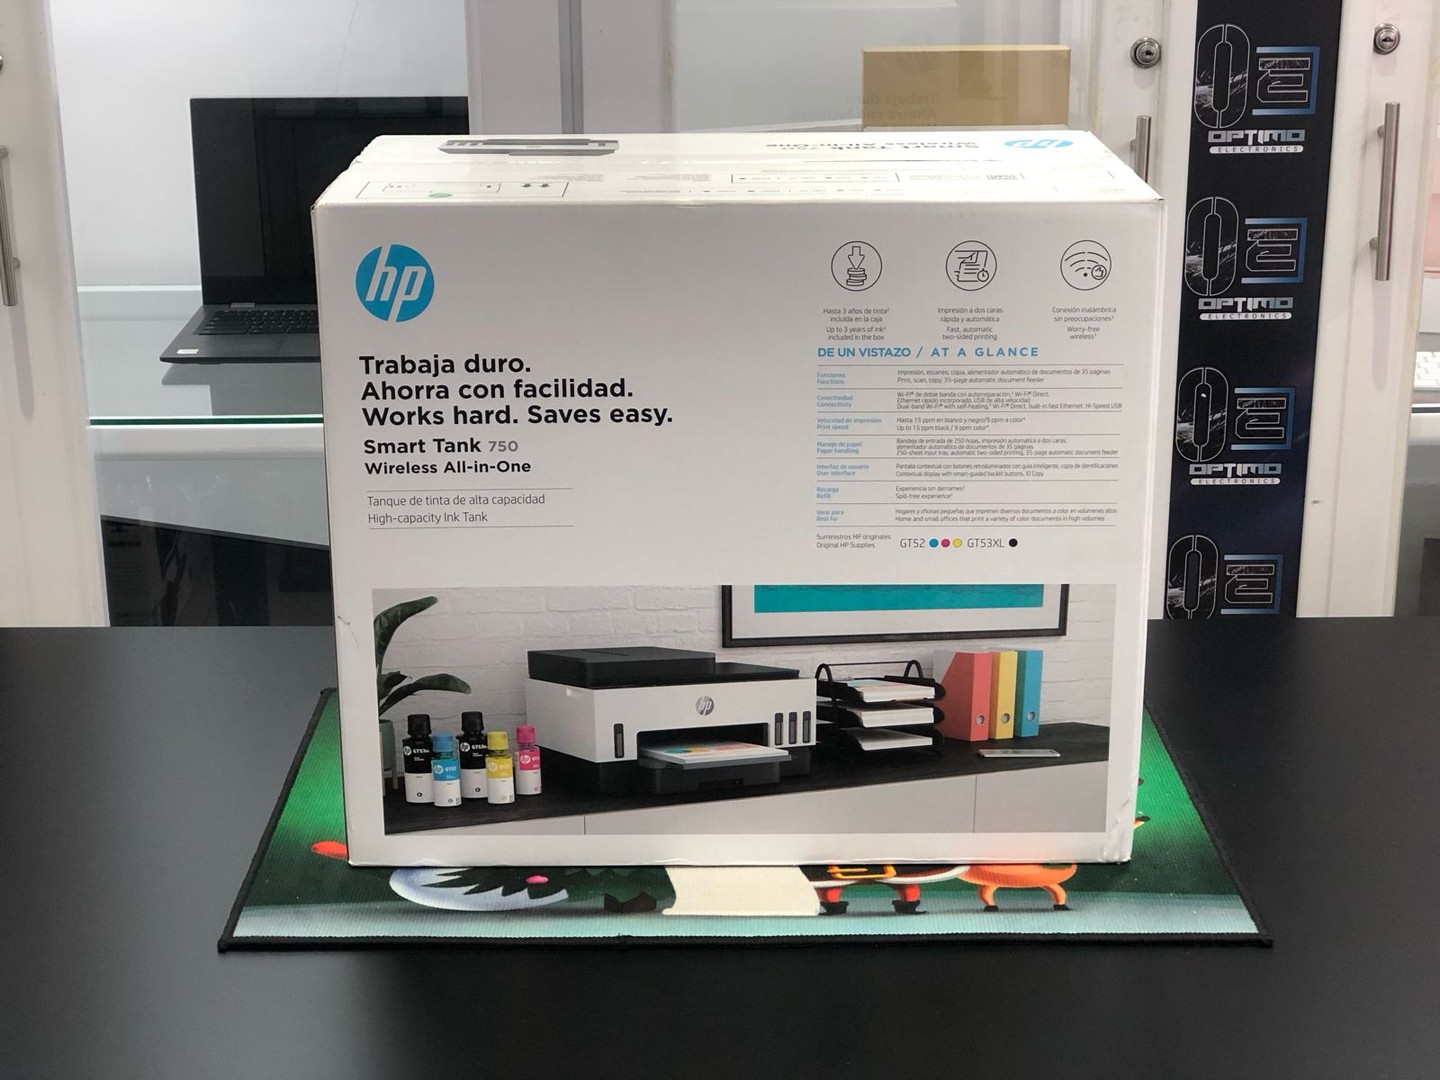 impresoras y scanners - Impresora HP 750 ADF Para Copia de Hoja Legal Nueva y Selalda Wifi, Multifuncion 0